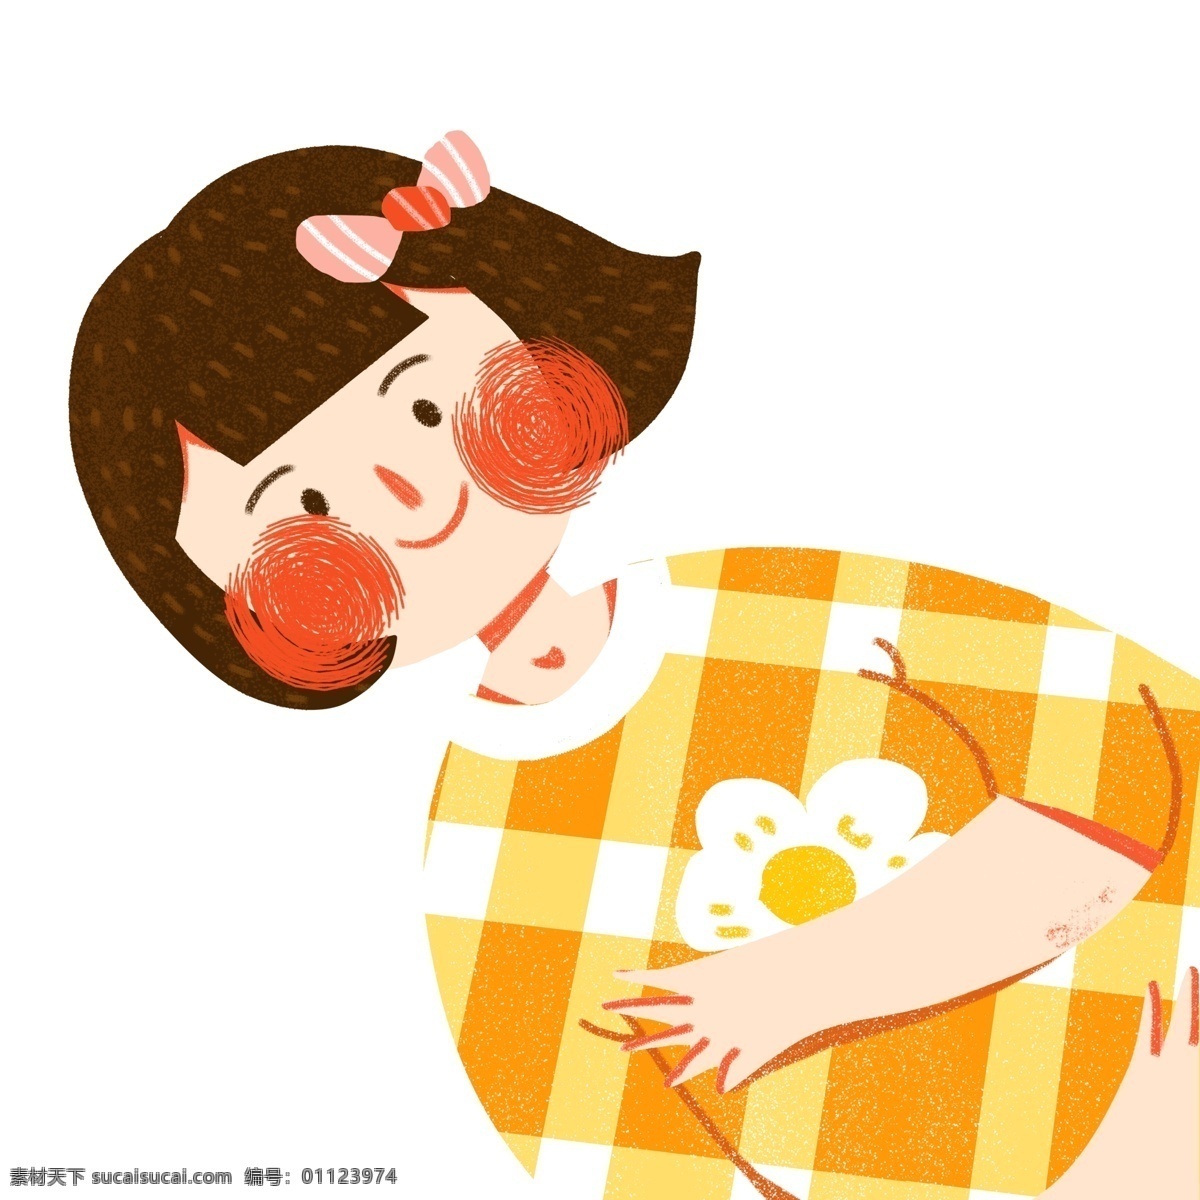 扁平化 一个 躺 短发 女孩 卡通 可爱 女生 休息 人物 插画